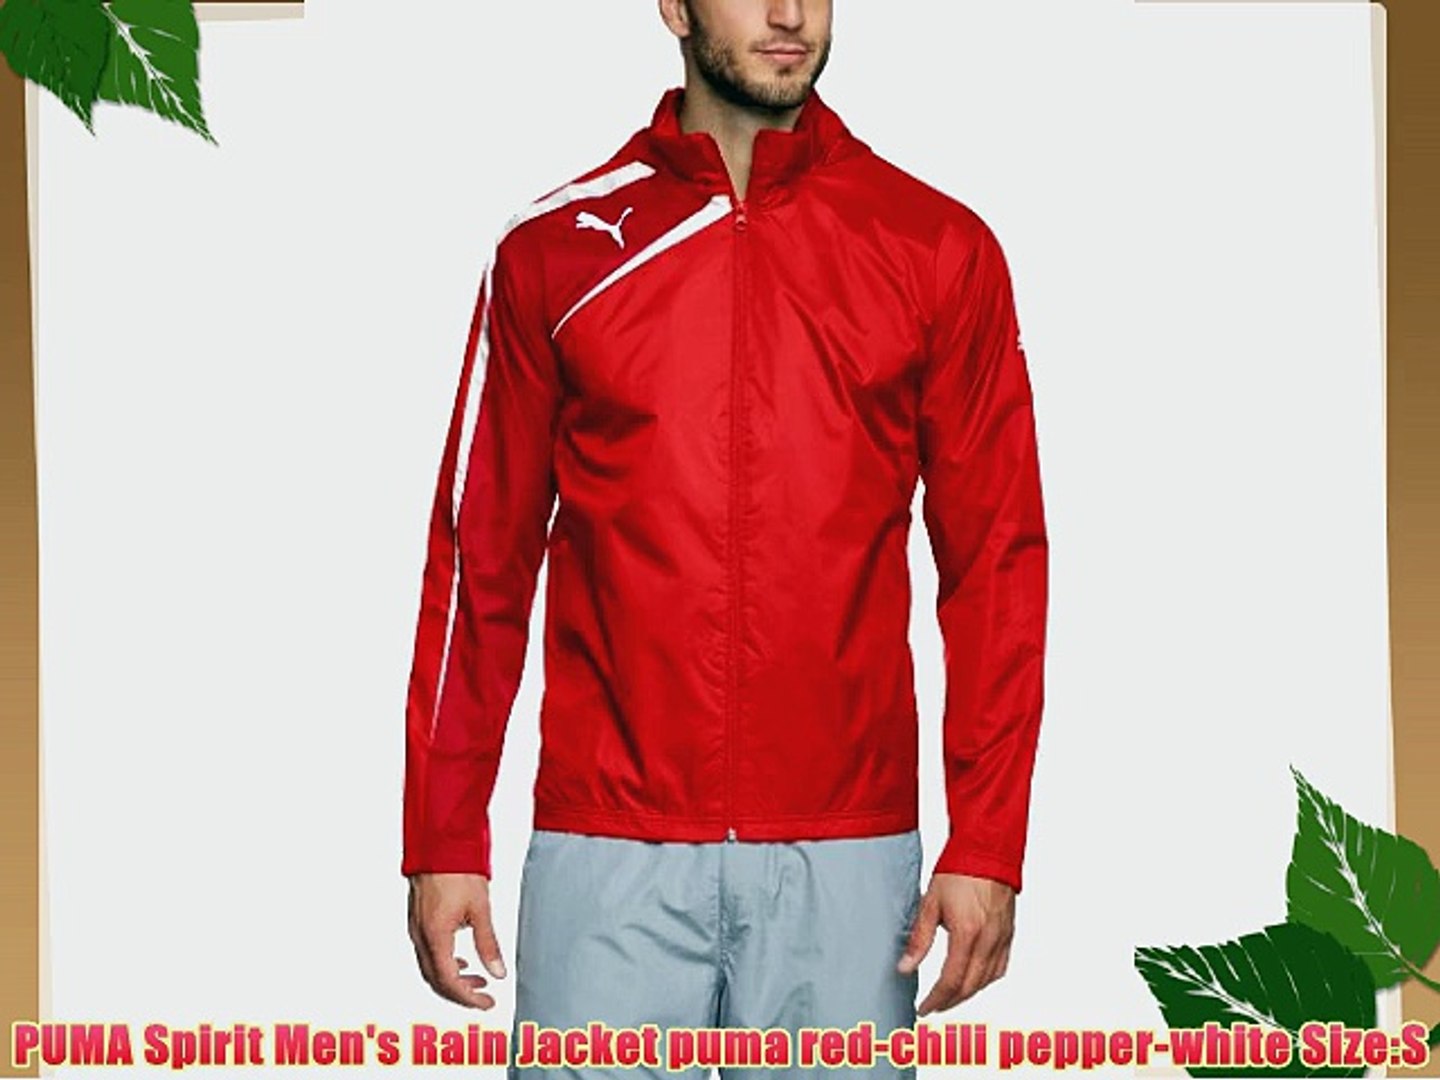 PUMA Spirit Men's Rain Jacket puma red-chili pepper-white Size:S - video  Dailymotion